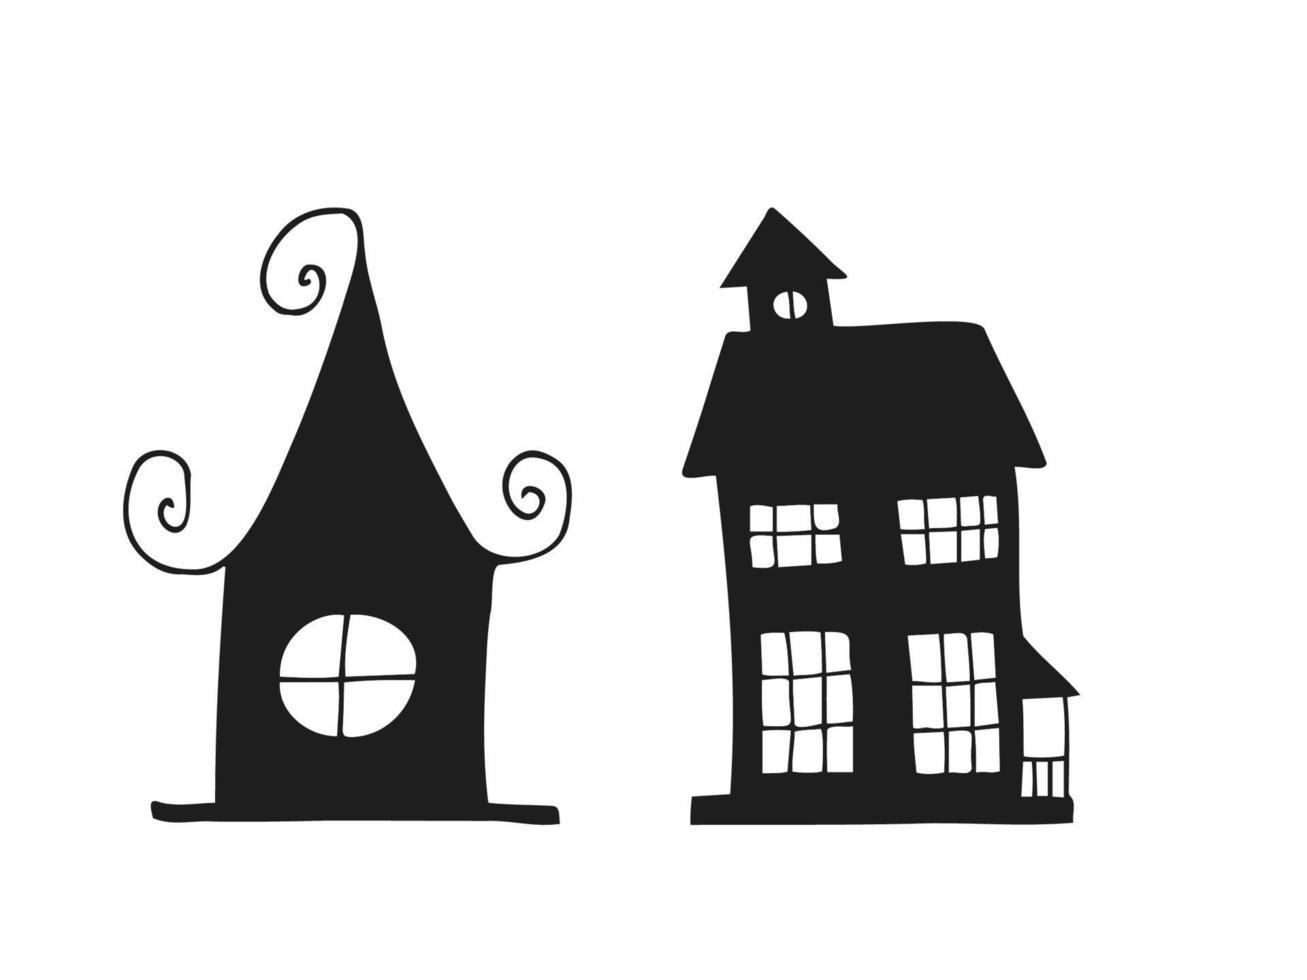 halloween 2022 - 31 de octubre. una fiesta tradicional. truco o trato. ilustración vectorial en estilo garabato dibujado a mano. conjunto de siluetas de casas terribles festivas. vector